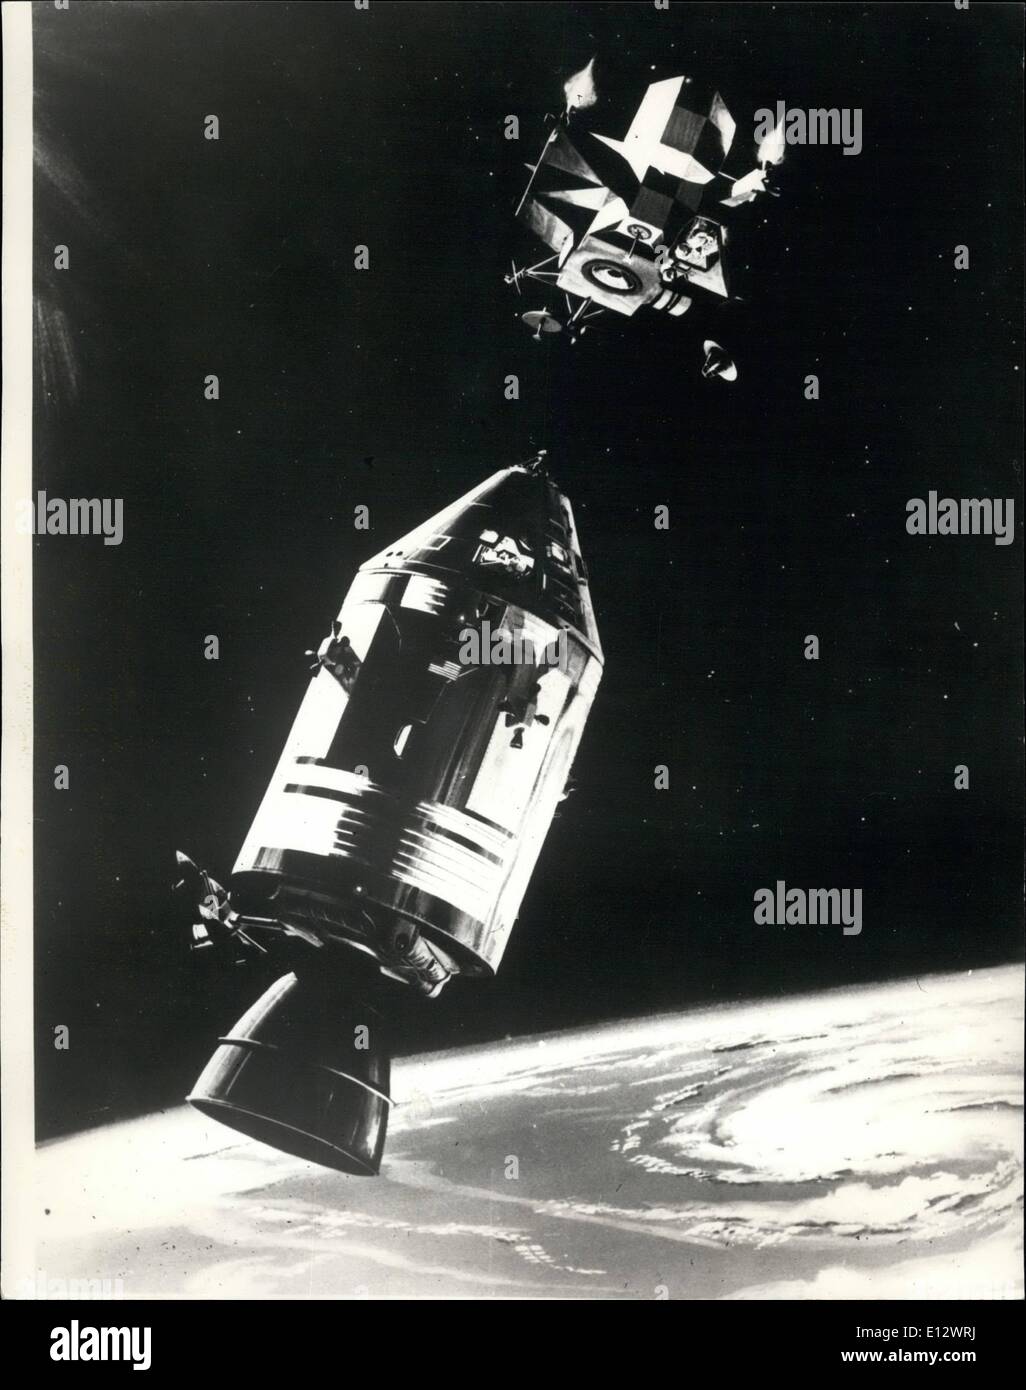 26. Februar 2012 - set Apollo Crew alle gehen; Die Apollo 9 Raumfahrt sieht ganz eingestellt, um heute - nehmen Sie die drei Astronauten. James Mcdivitt, David Scott und Russell Schweikart gesehen, um ihre Erkältung abgeschüttelt haben. Foto zeigt diese Zeichnung zeigt das Raumschiff Apollo 9 Befehl und service-Module wird in Position gehalten von Astronauten David Scott, wie Lunar Module Pilot Russel Schweikart Aufstieg Stadium der LM, das erste bemannte Rendezvous Manöver und Docking-ca. 150 Meilen über der Oberfläche der Erde Stockfoto